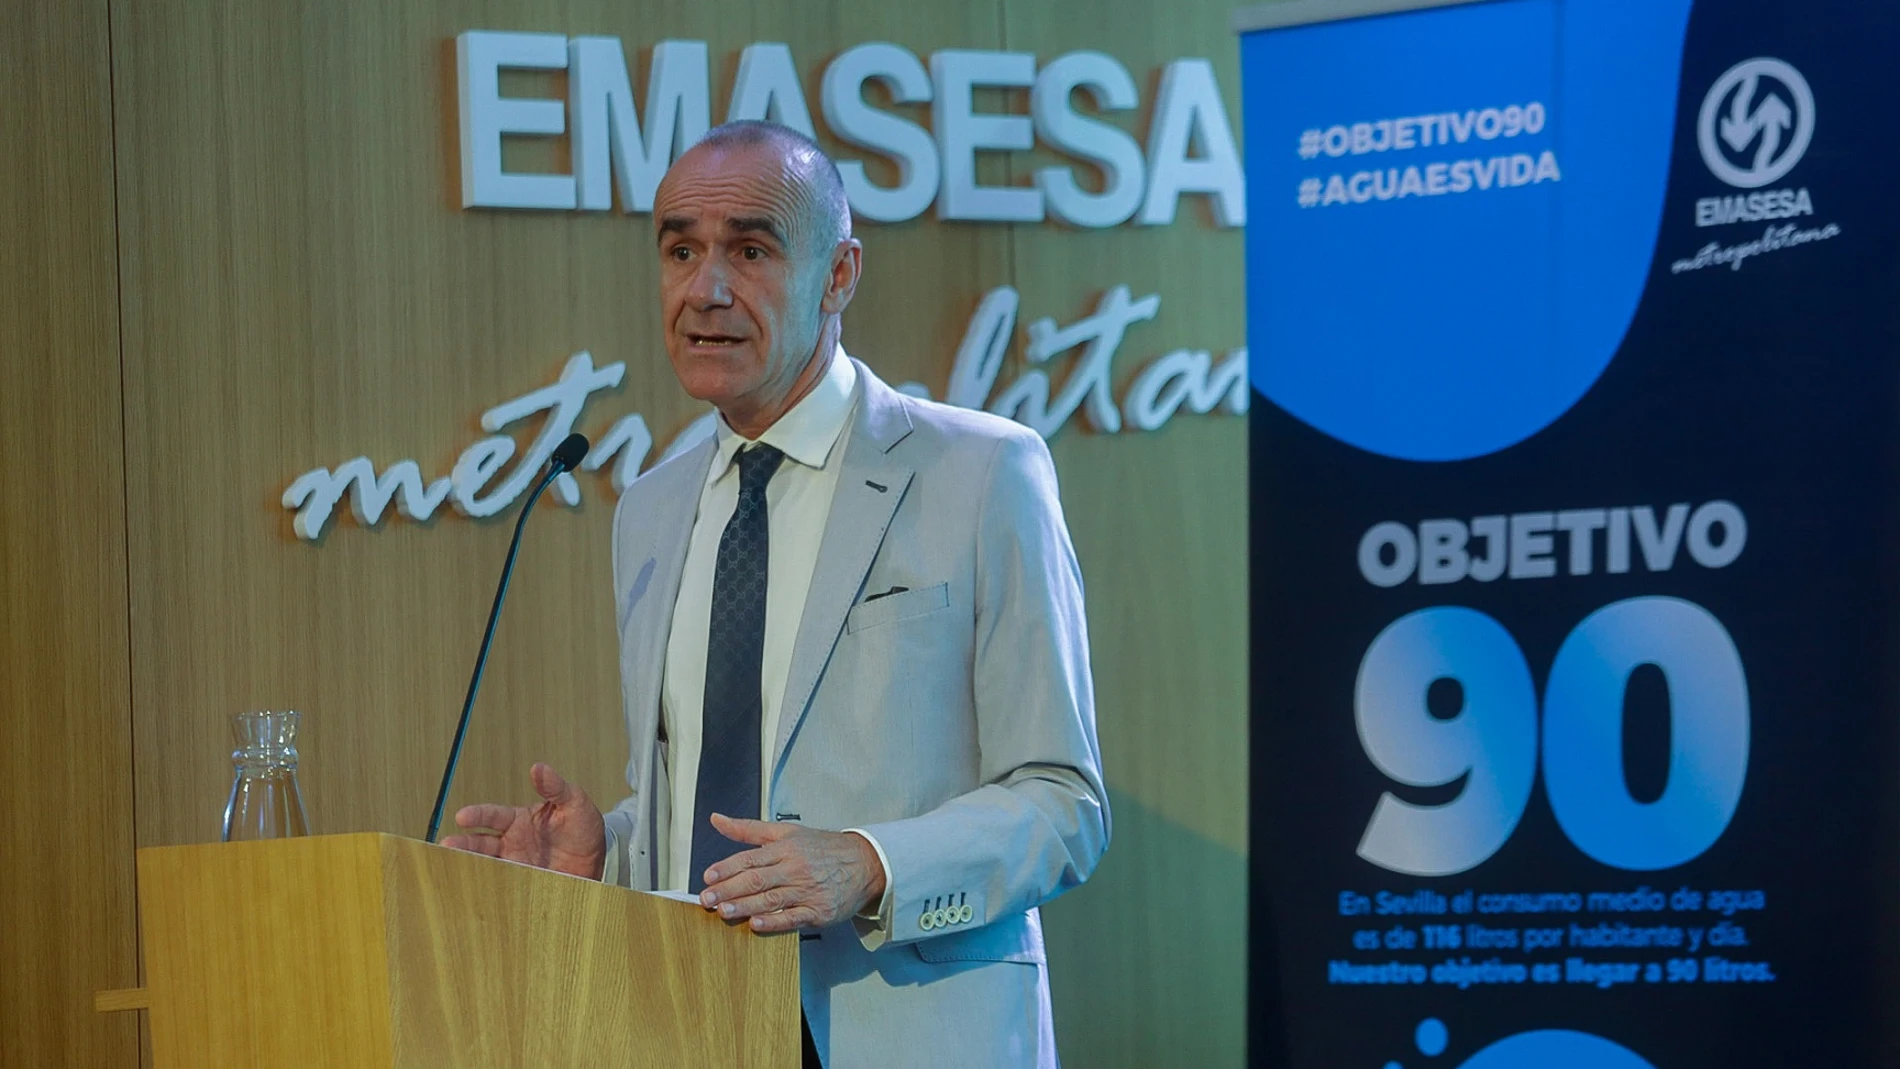 El alcalde de Sevilla, Antonio Muñoz, este miércoles en el acto con Emasesa